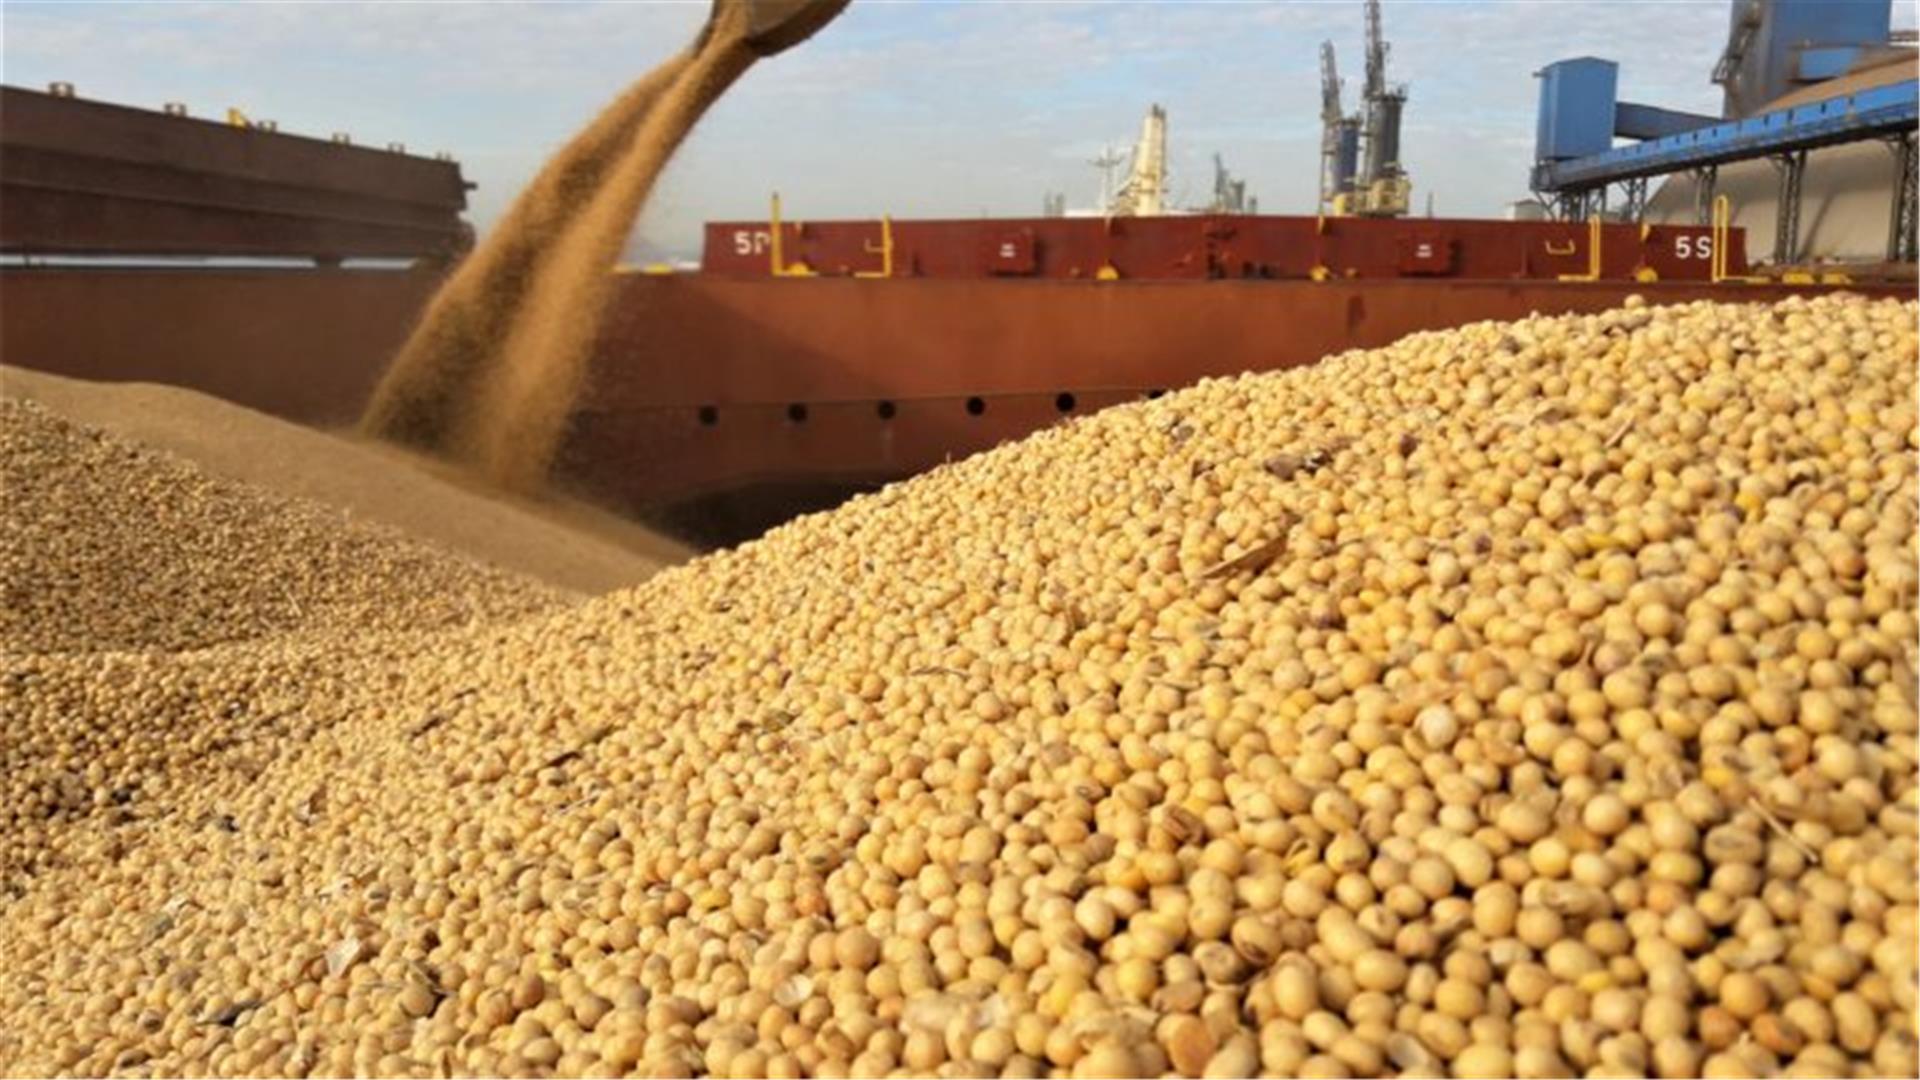 Practical Guidance for Loading Soya Beans in Brazil. UK P&I Club